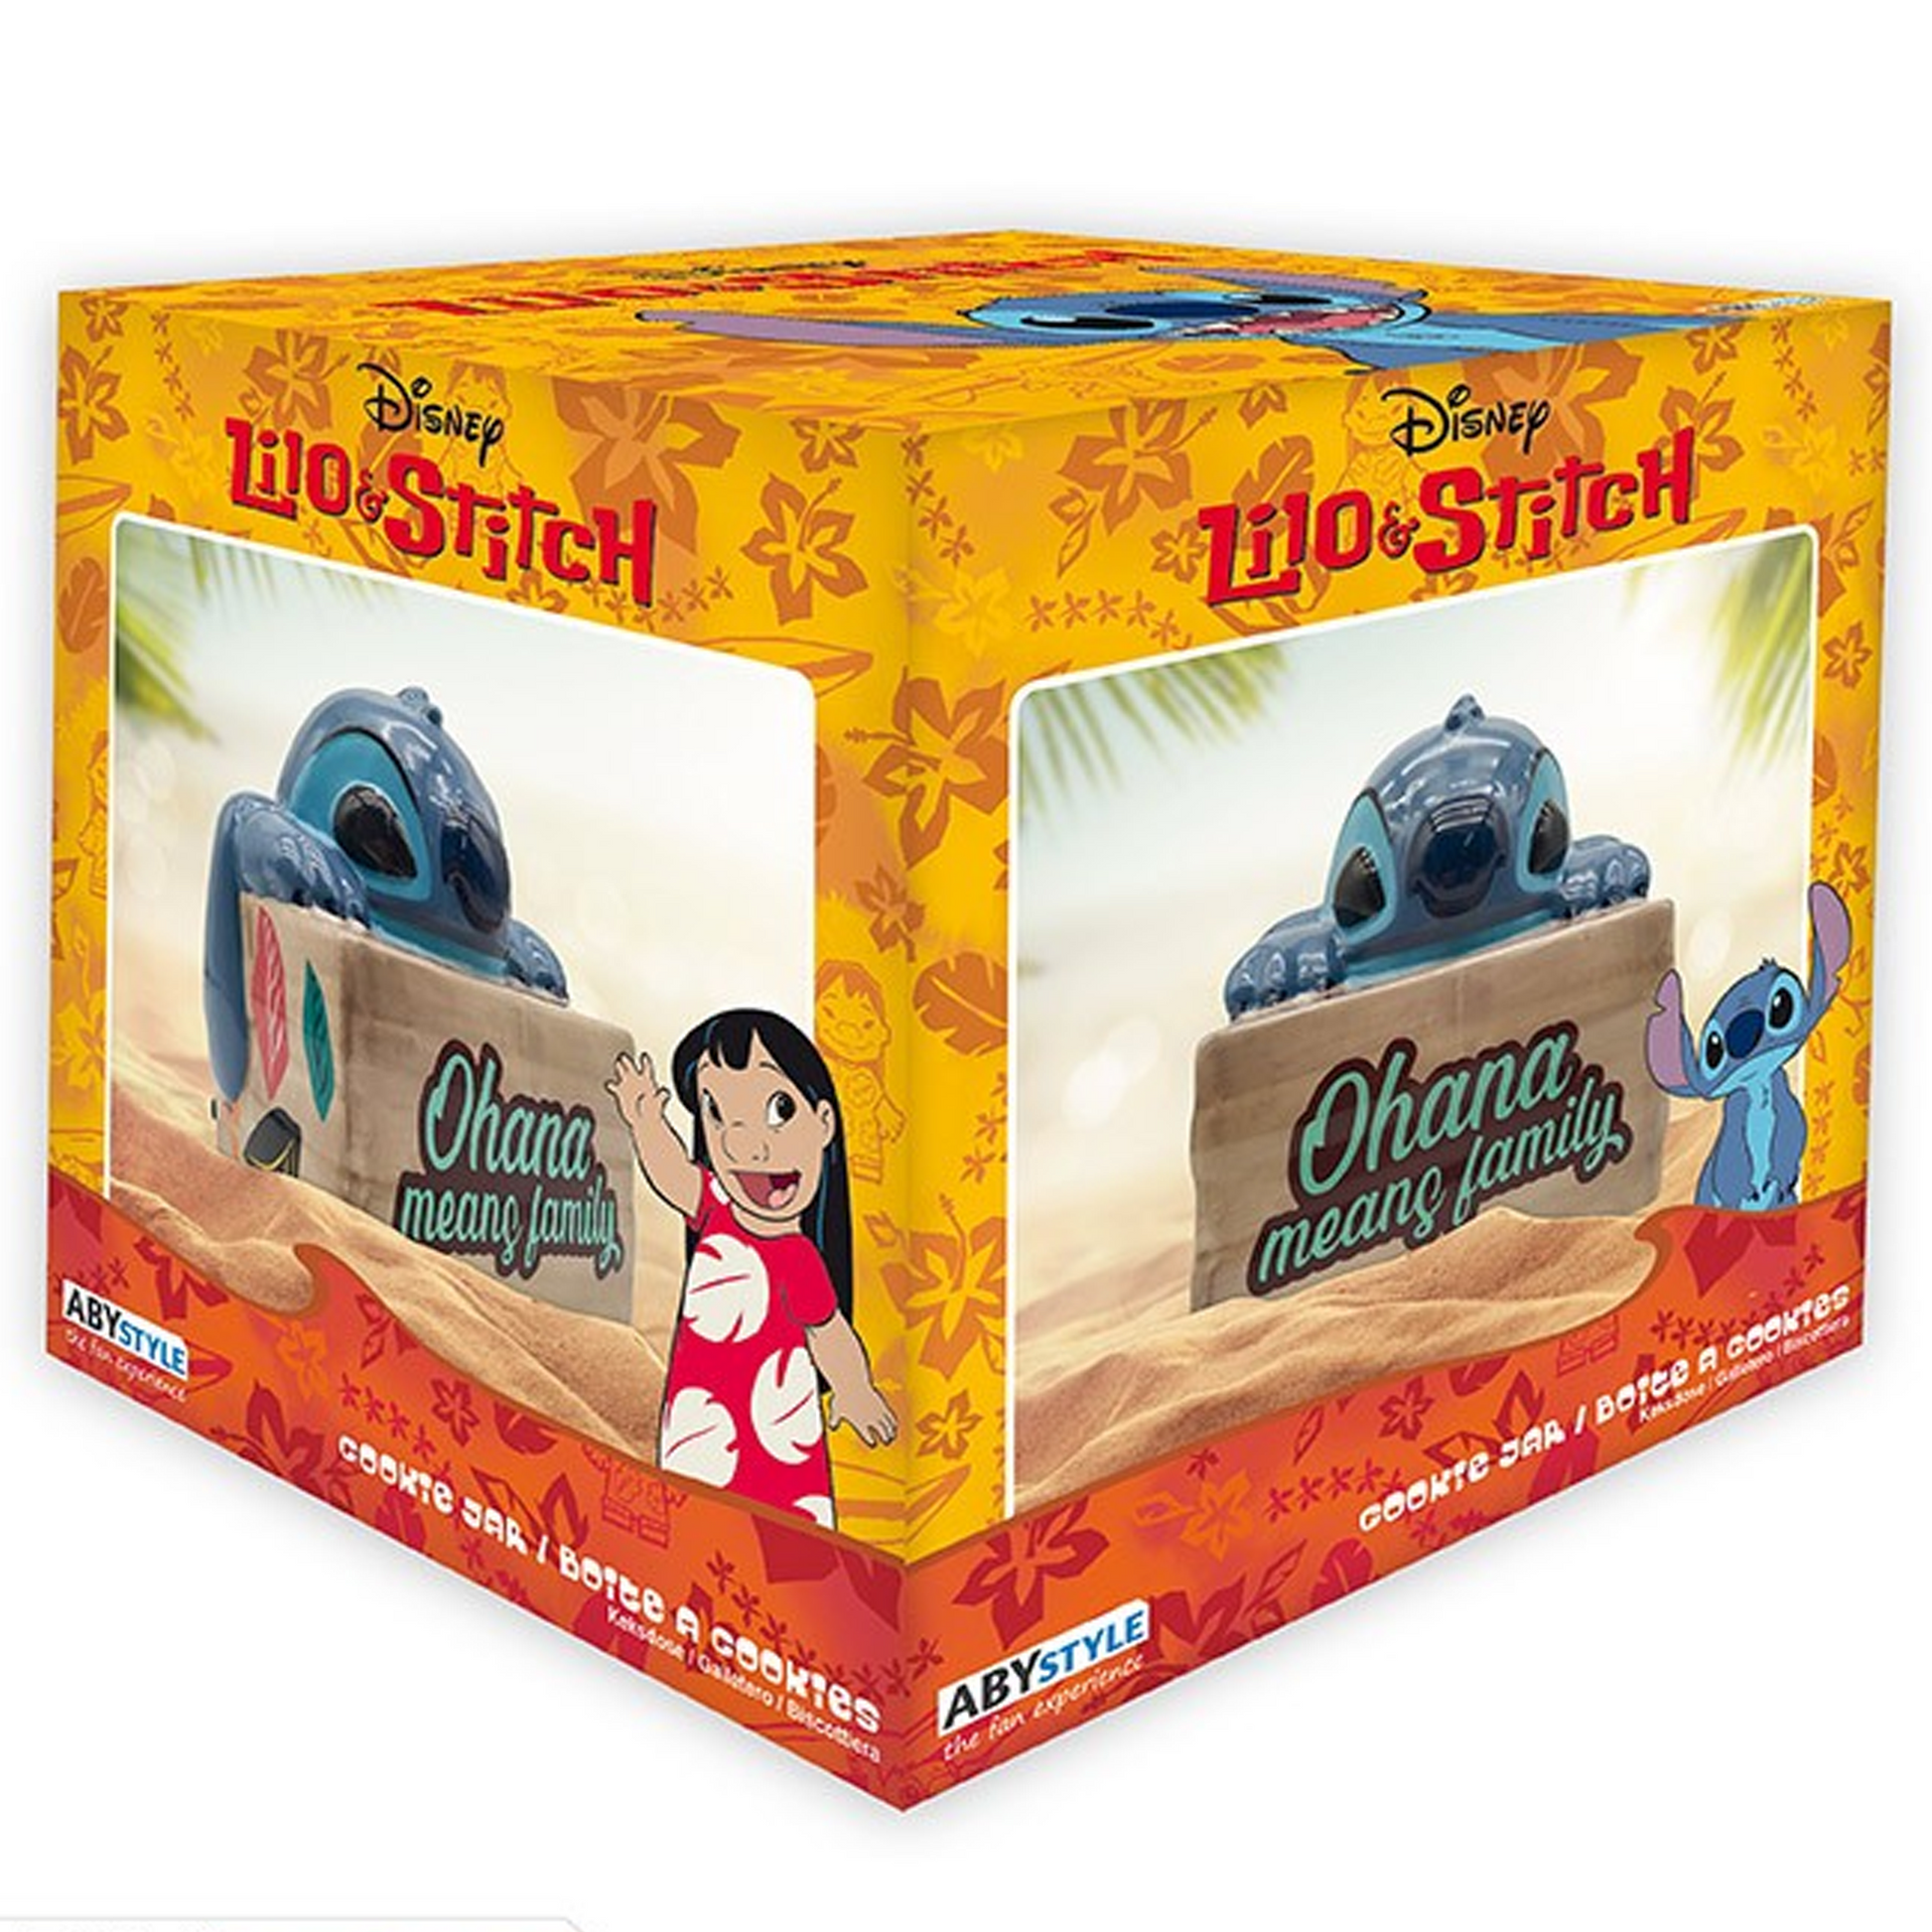 Stitch - 3D Lilo & Stitch Shaped Disney Cookie / Storage Jar (Boxed) | Happy Piranha